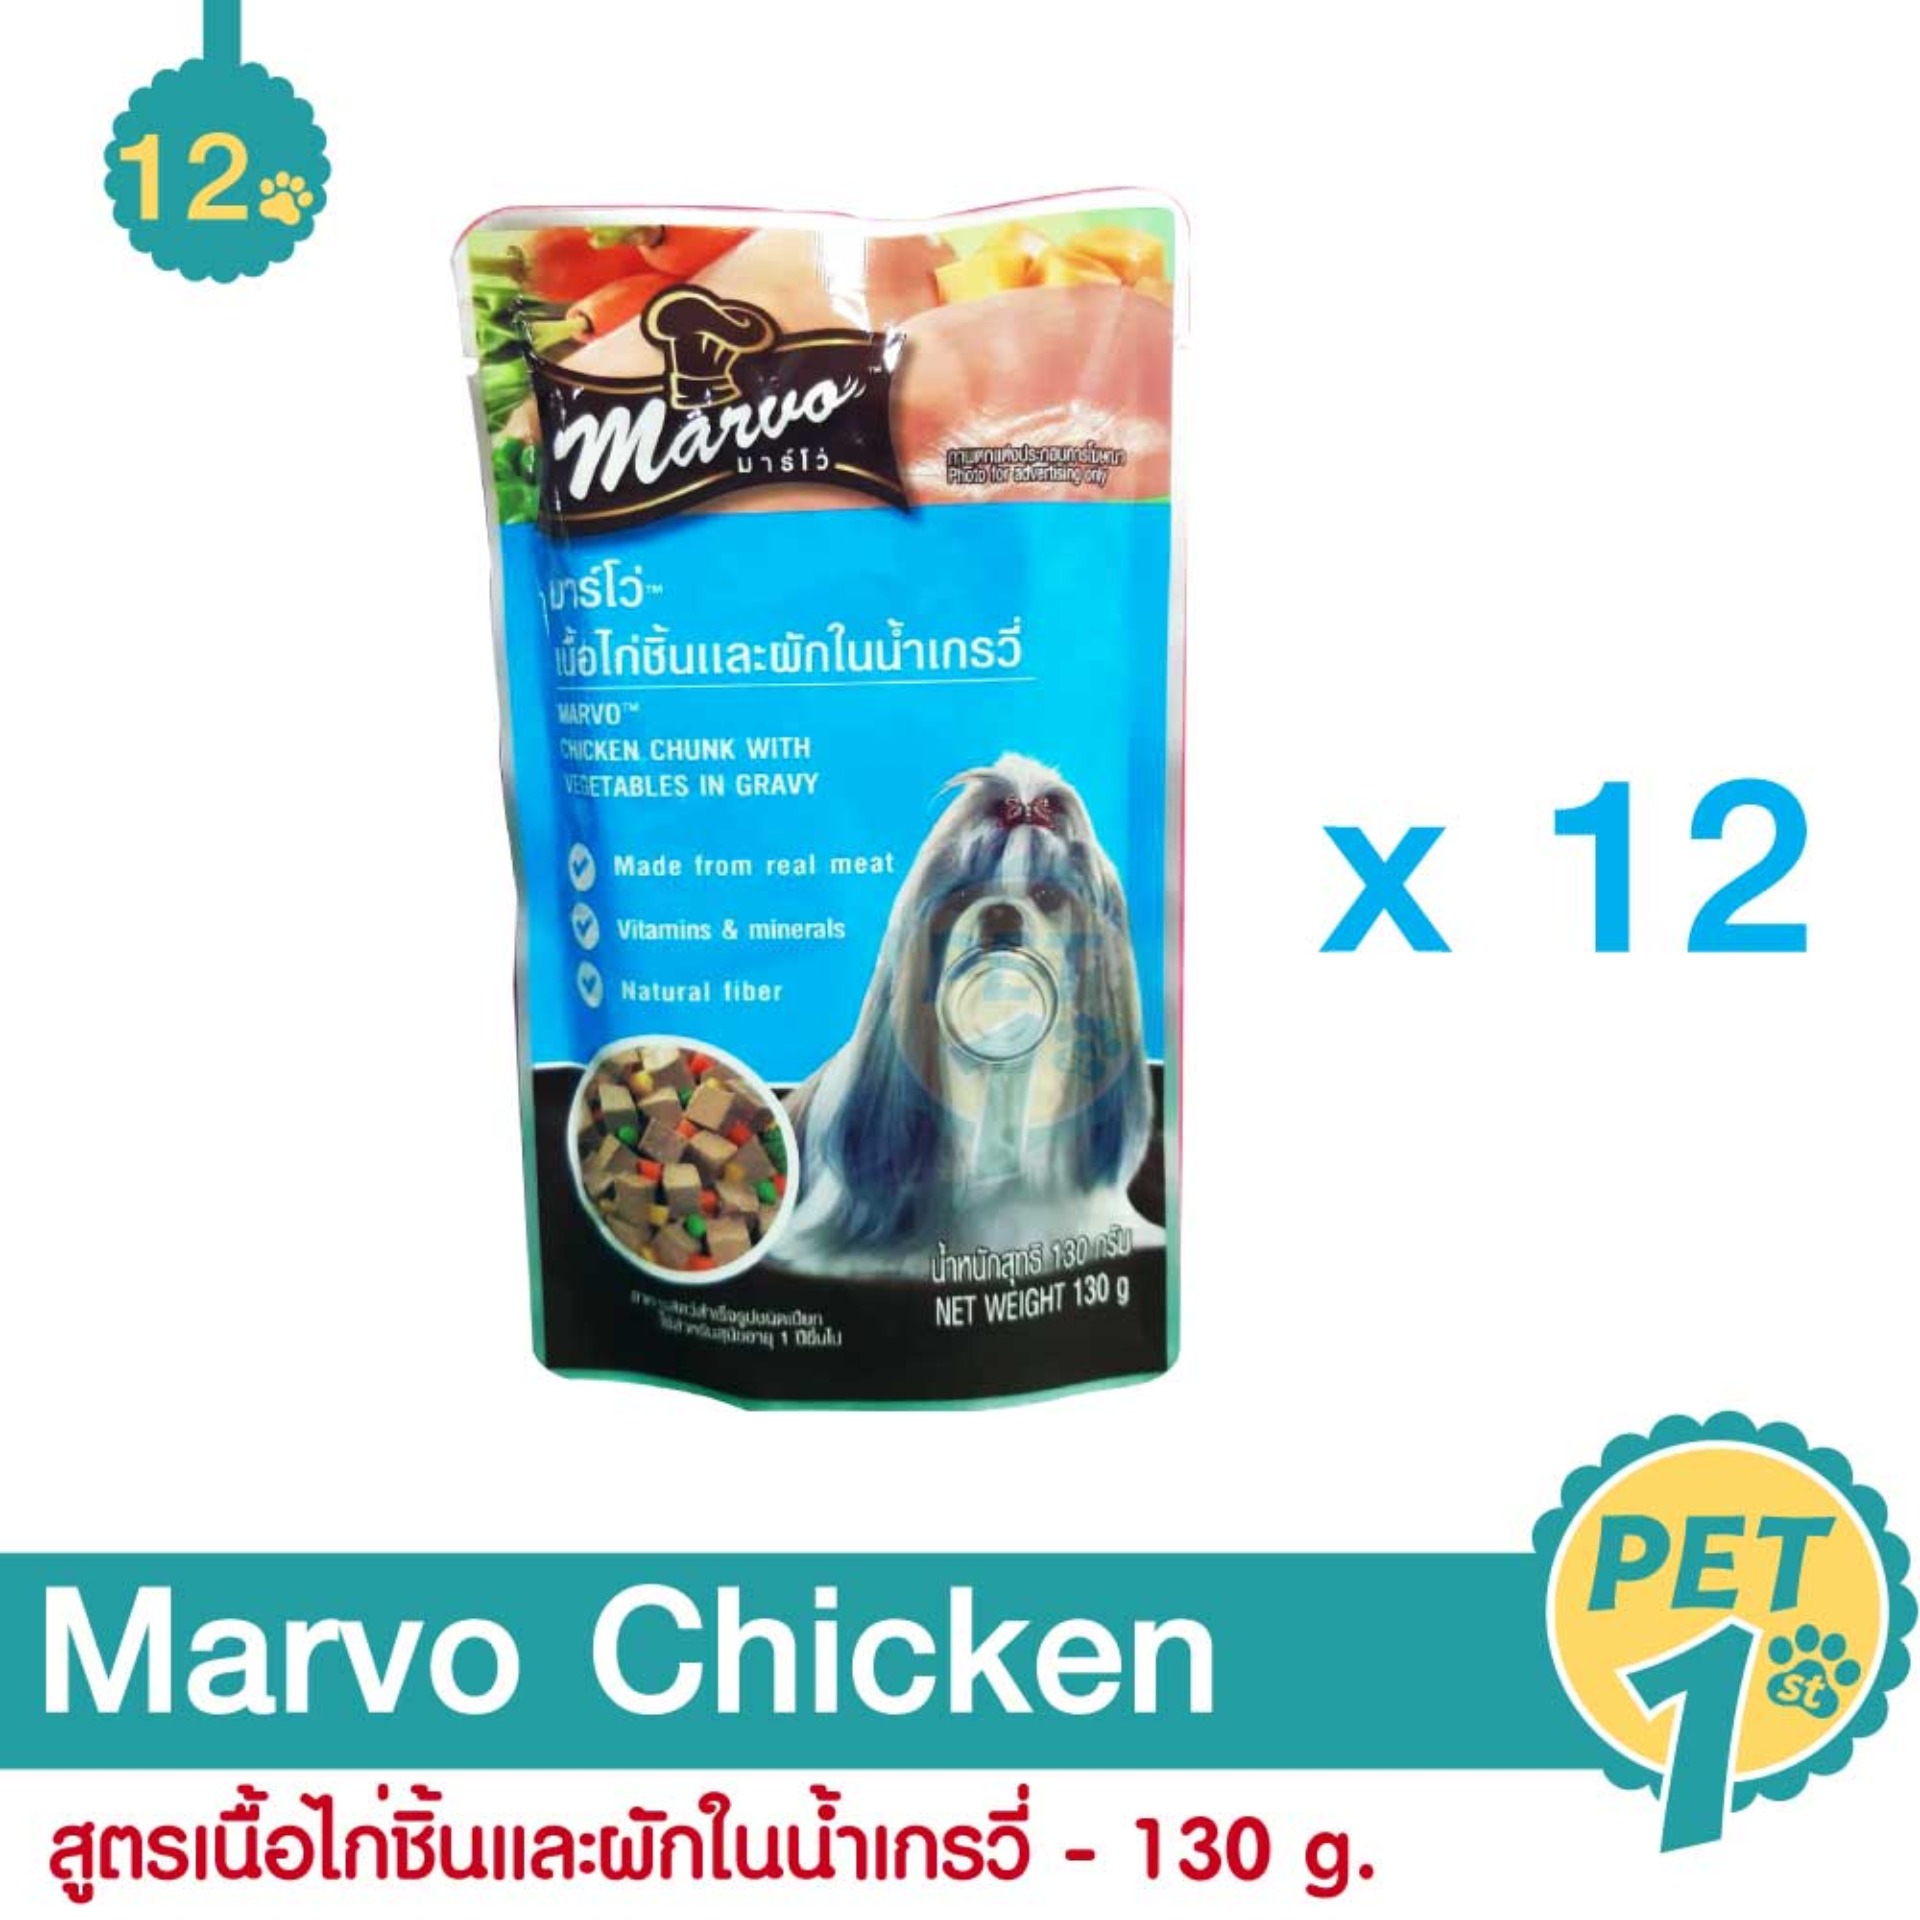 Marvo Pouch 130 g. อาหารสุนัข อาหารเปียก สูตรเนื้อไก่ชิ้นและผักในน้ำเกรวี่ สำหรับสุนัข 130 กรัม - 12 ซอง